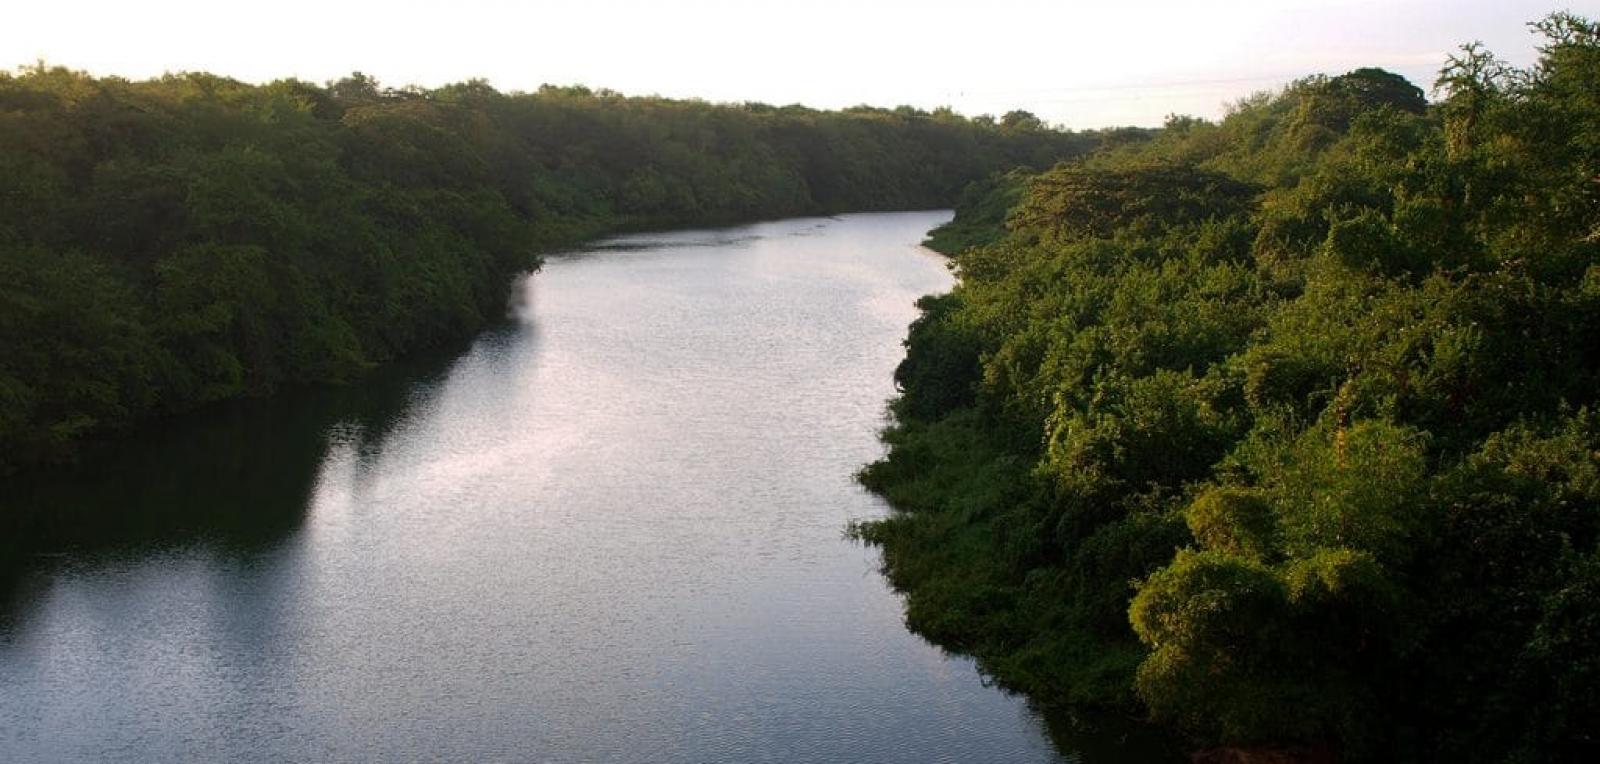 Rio Cauto, a river treasure in the eastern region